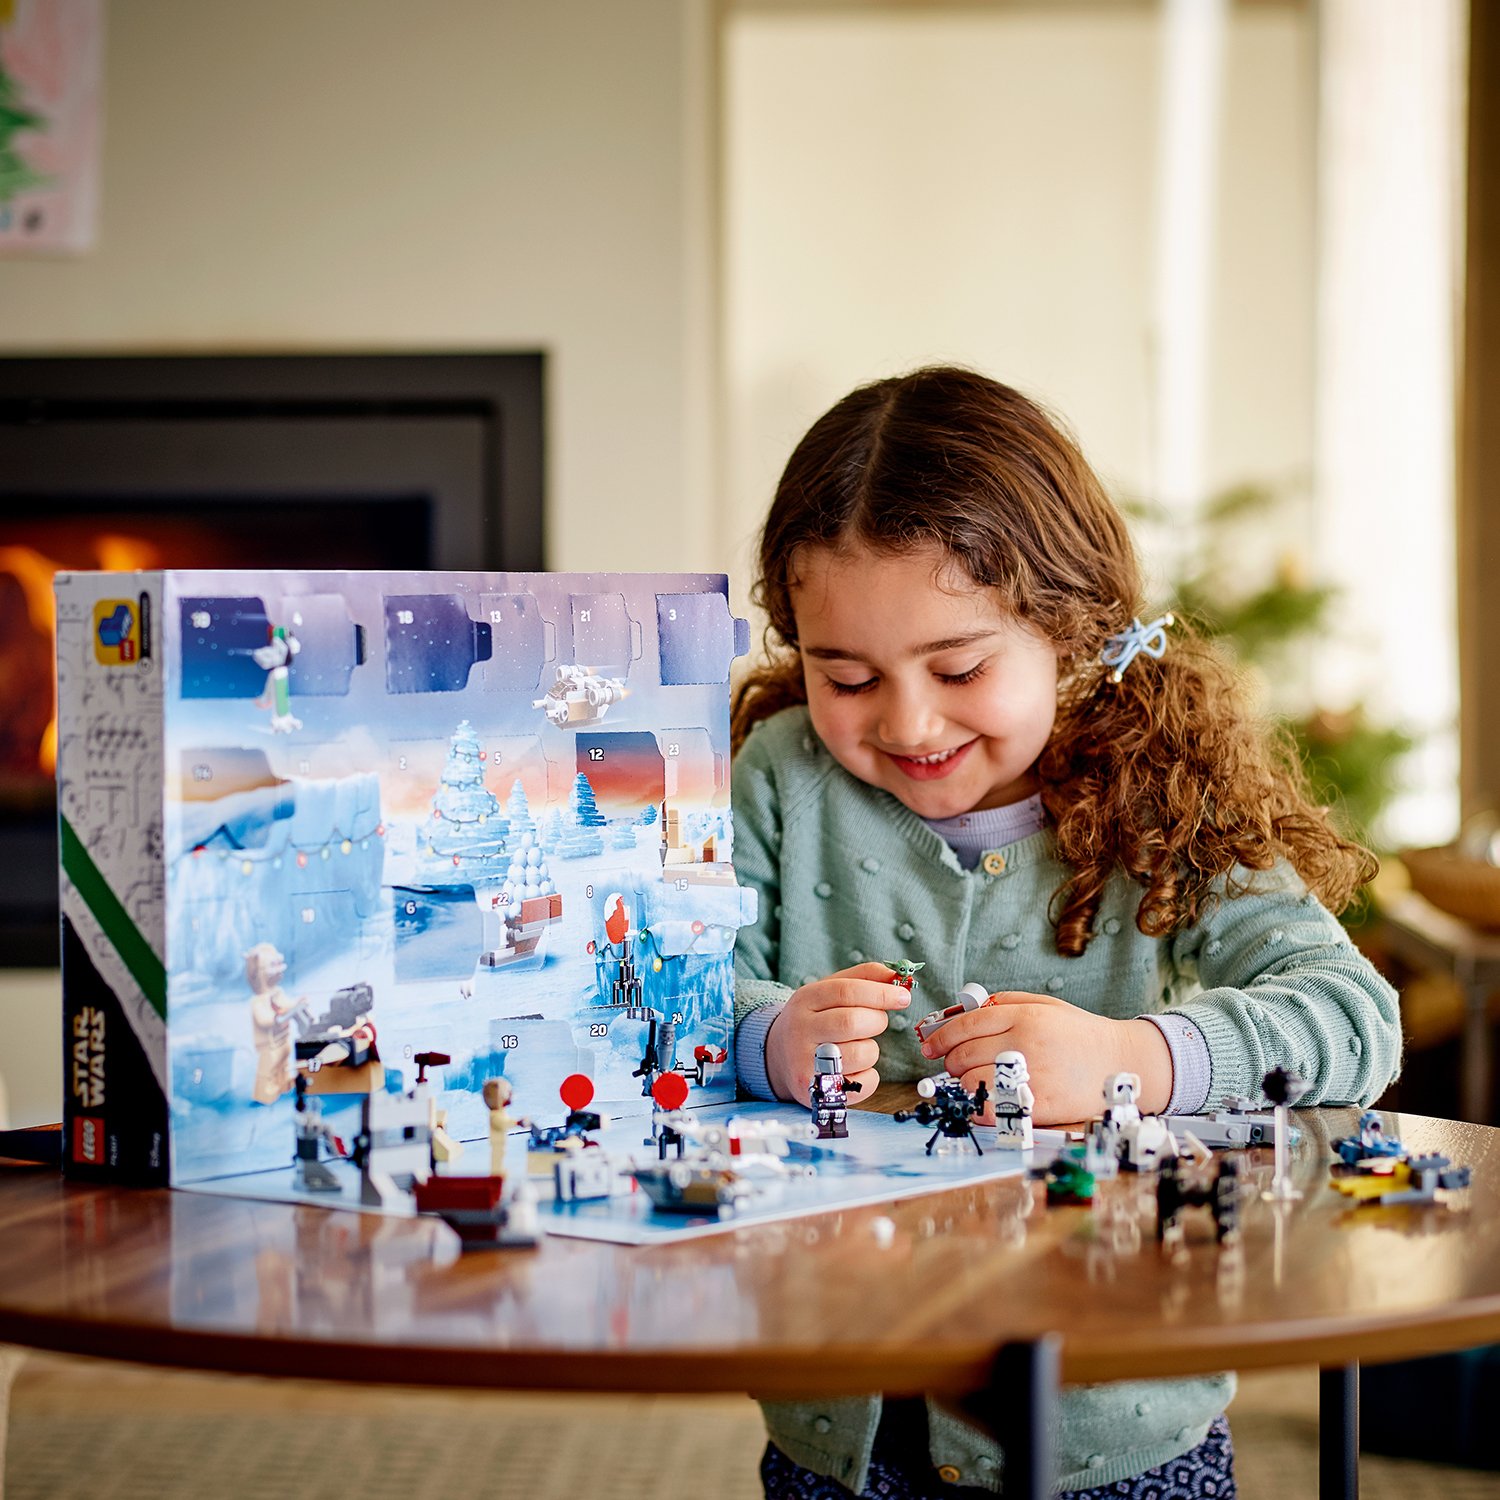 Конструктор LEGO 75307 Star Wars Новогодний Advent календарь